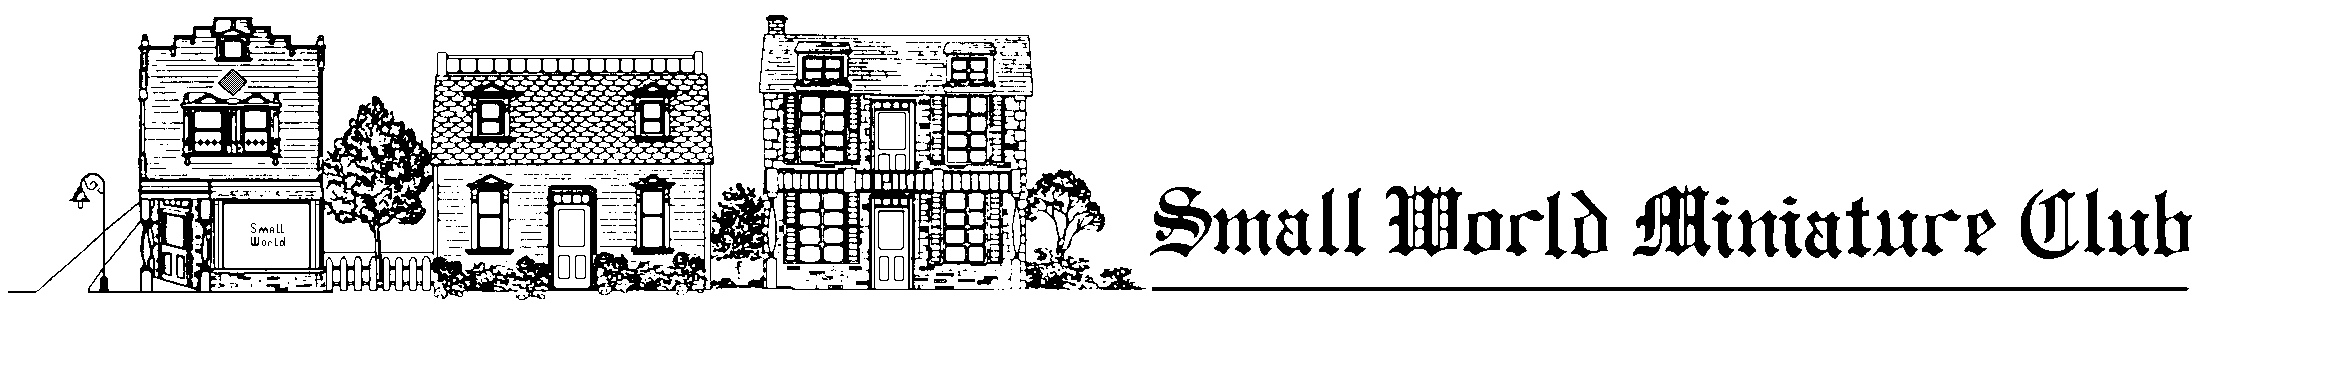 Small World Miniature Club